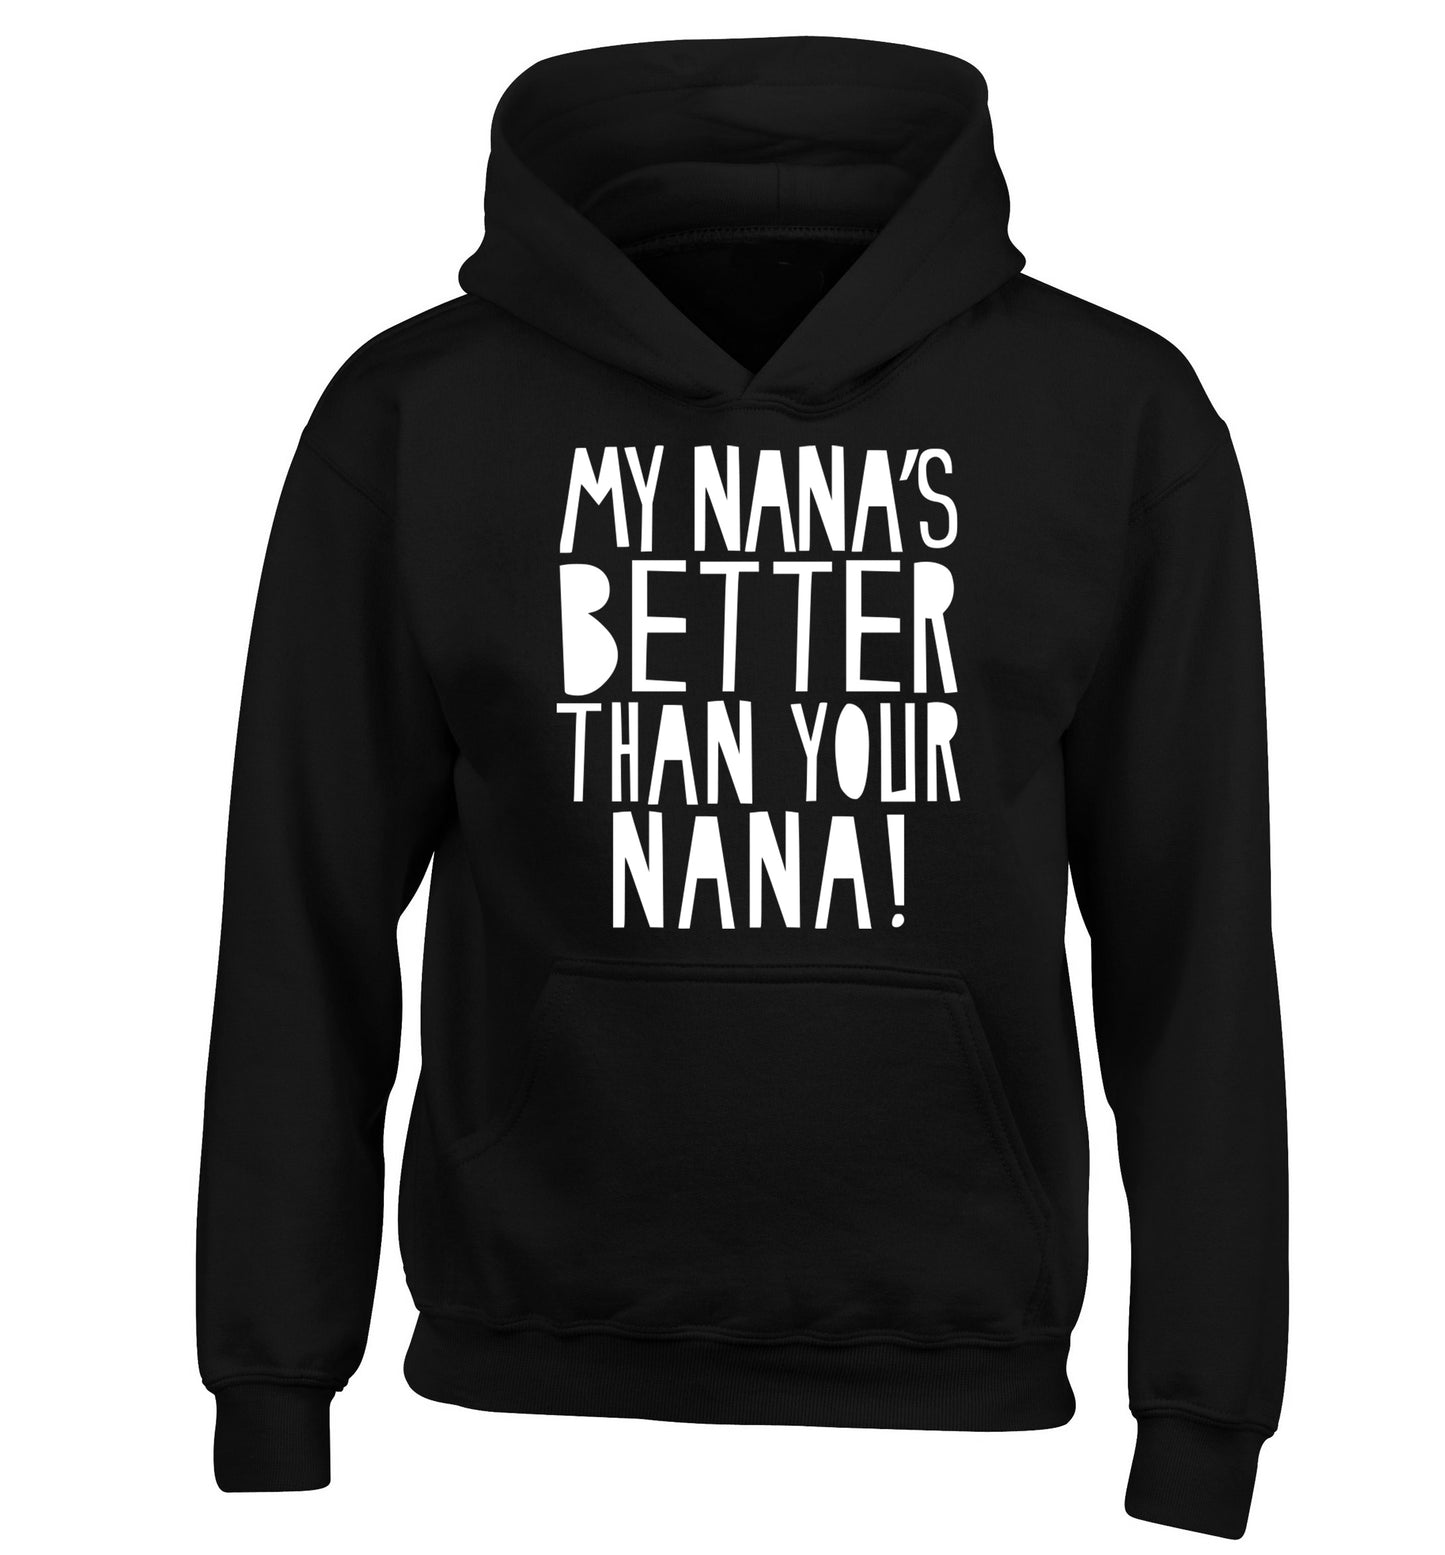 My nana's better than your nana children's black hoodie 12-13 Years